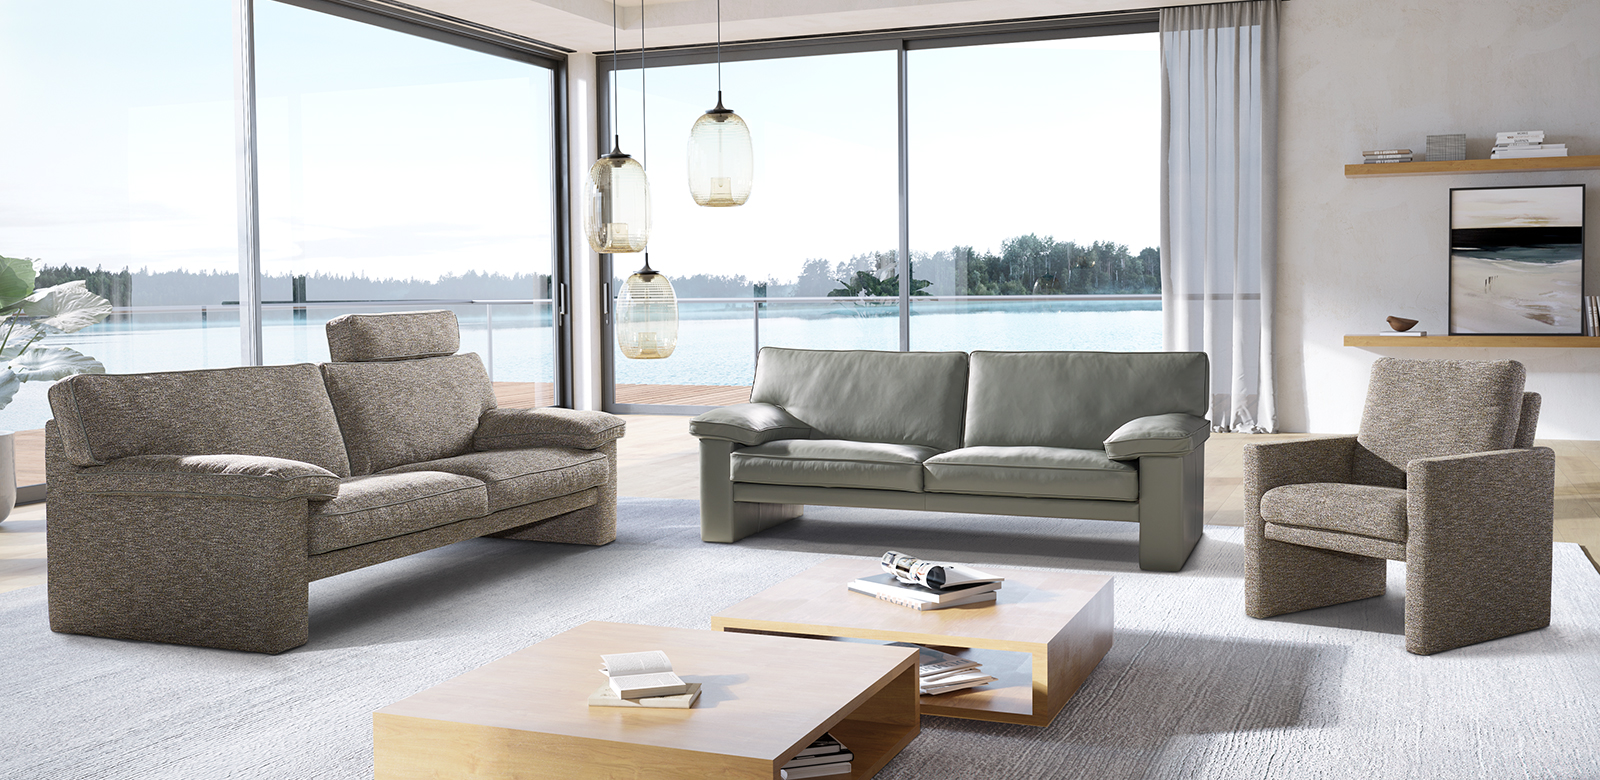 CL360 Möbelkombination aus 2,5-Sitzer und Sessel in grau-braunem Stoff und 2,5-Sitzer in grau-grünem-Leder in modernem Wohnzimmer am See.